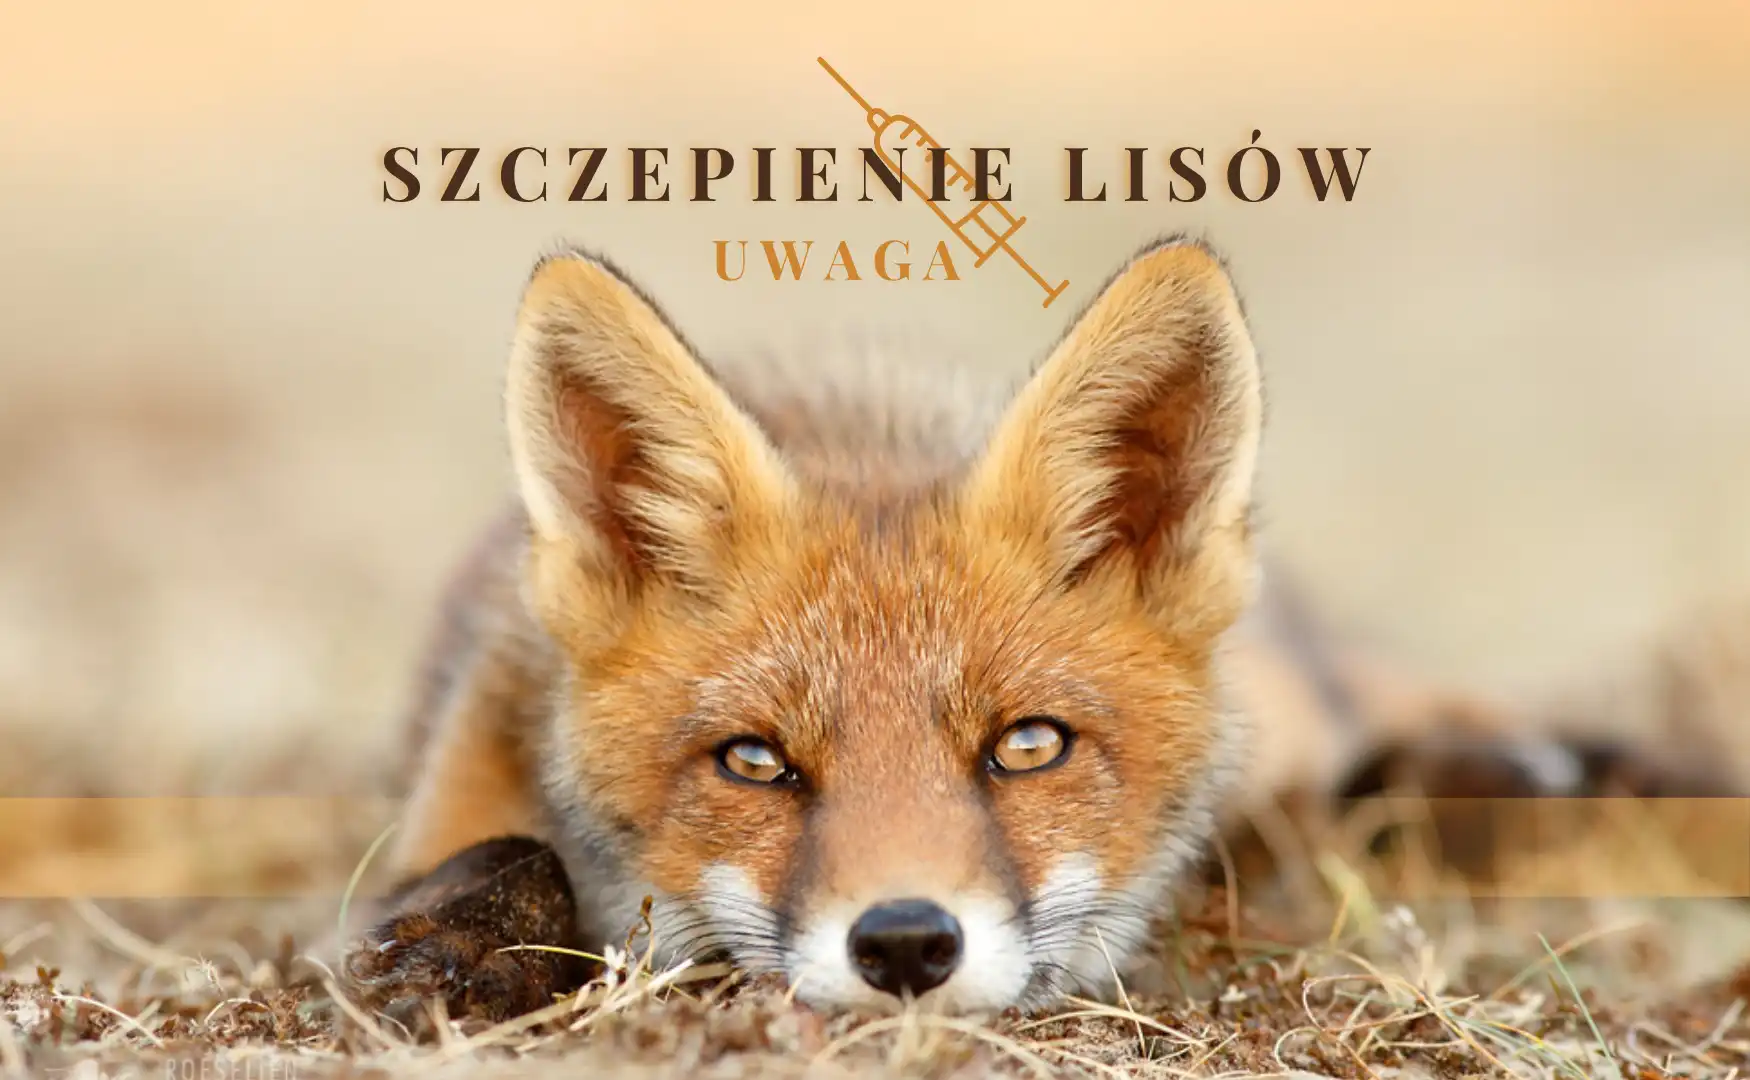 Małopolska: Wiosenna akcja ochronnego szczepienia lisów